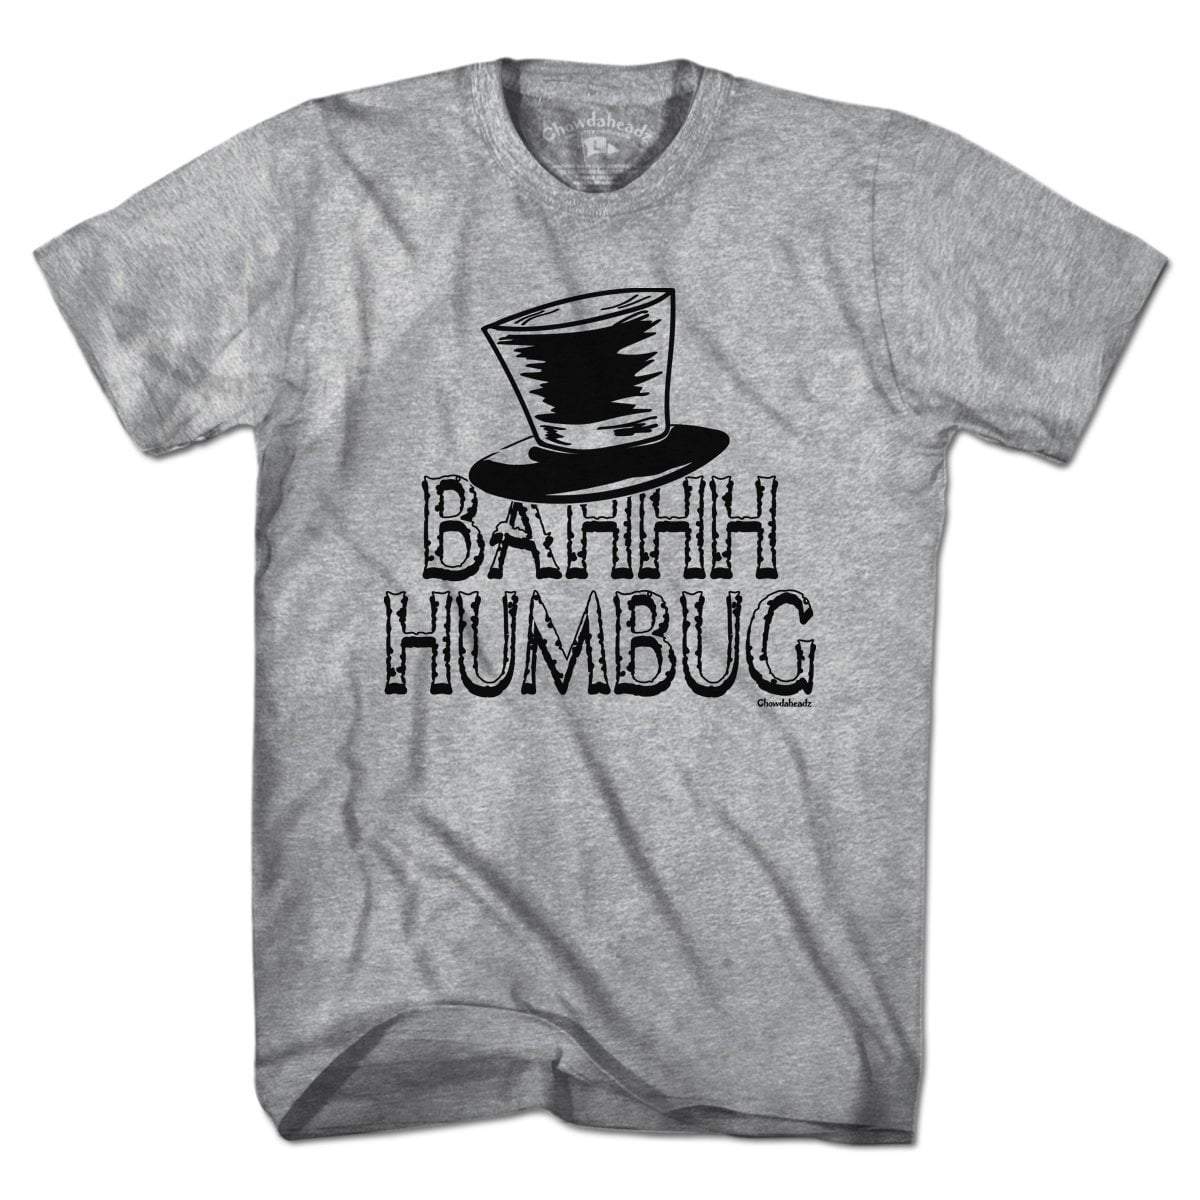 Bahhh Humbug T-Shirt - Chowdaheadz